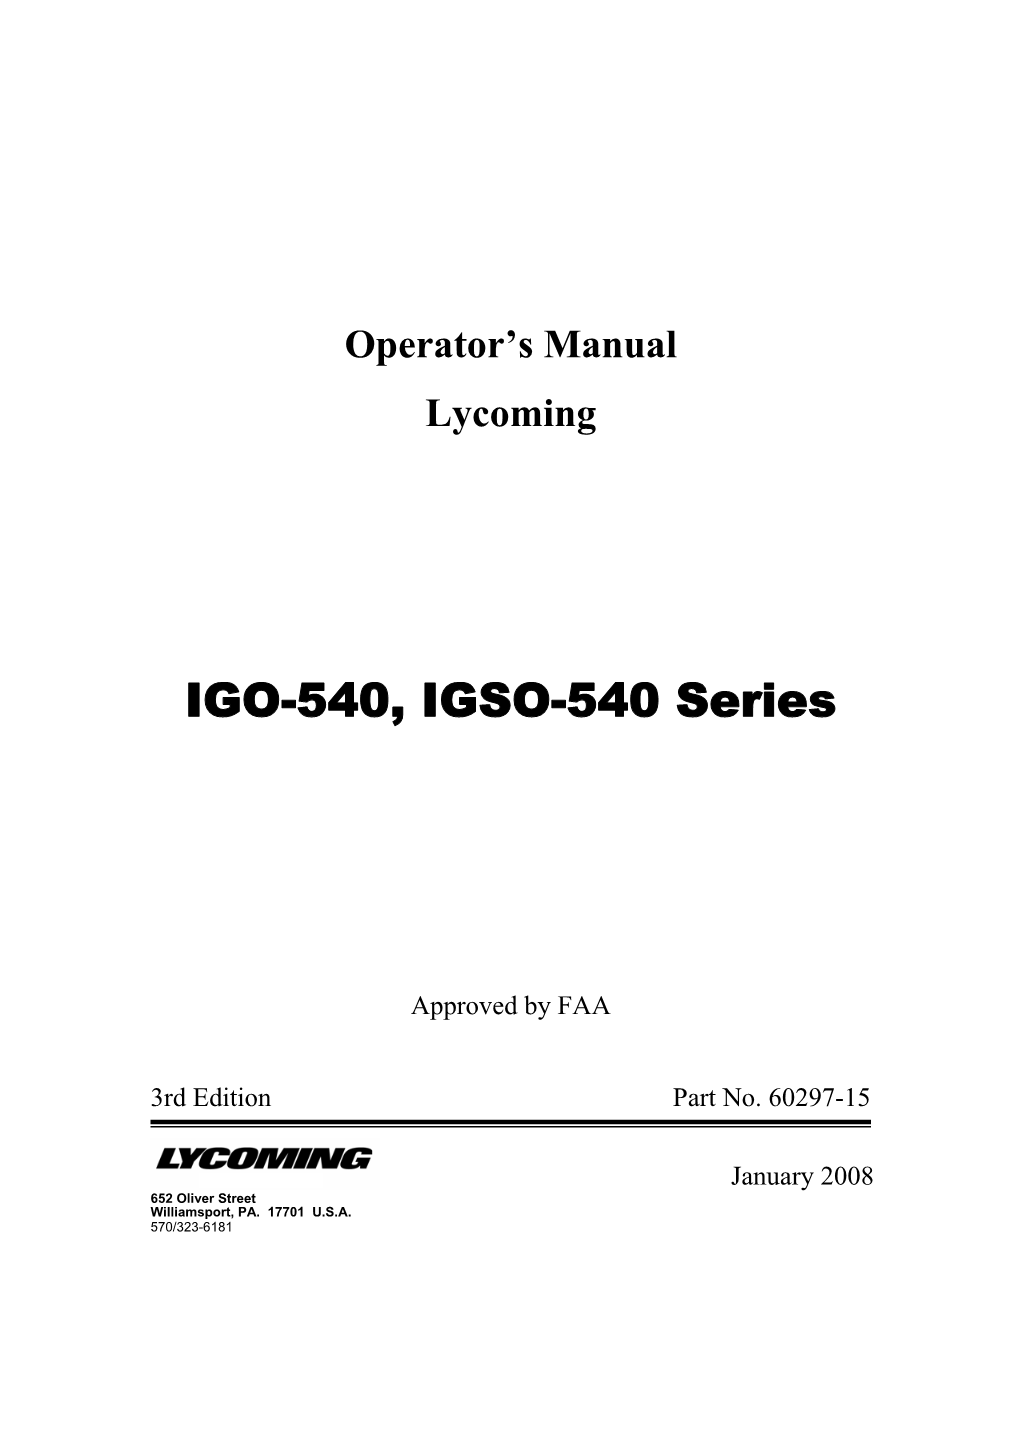 IGO-540, IGSO-540 Series